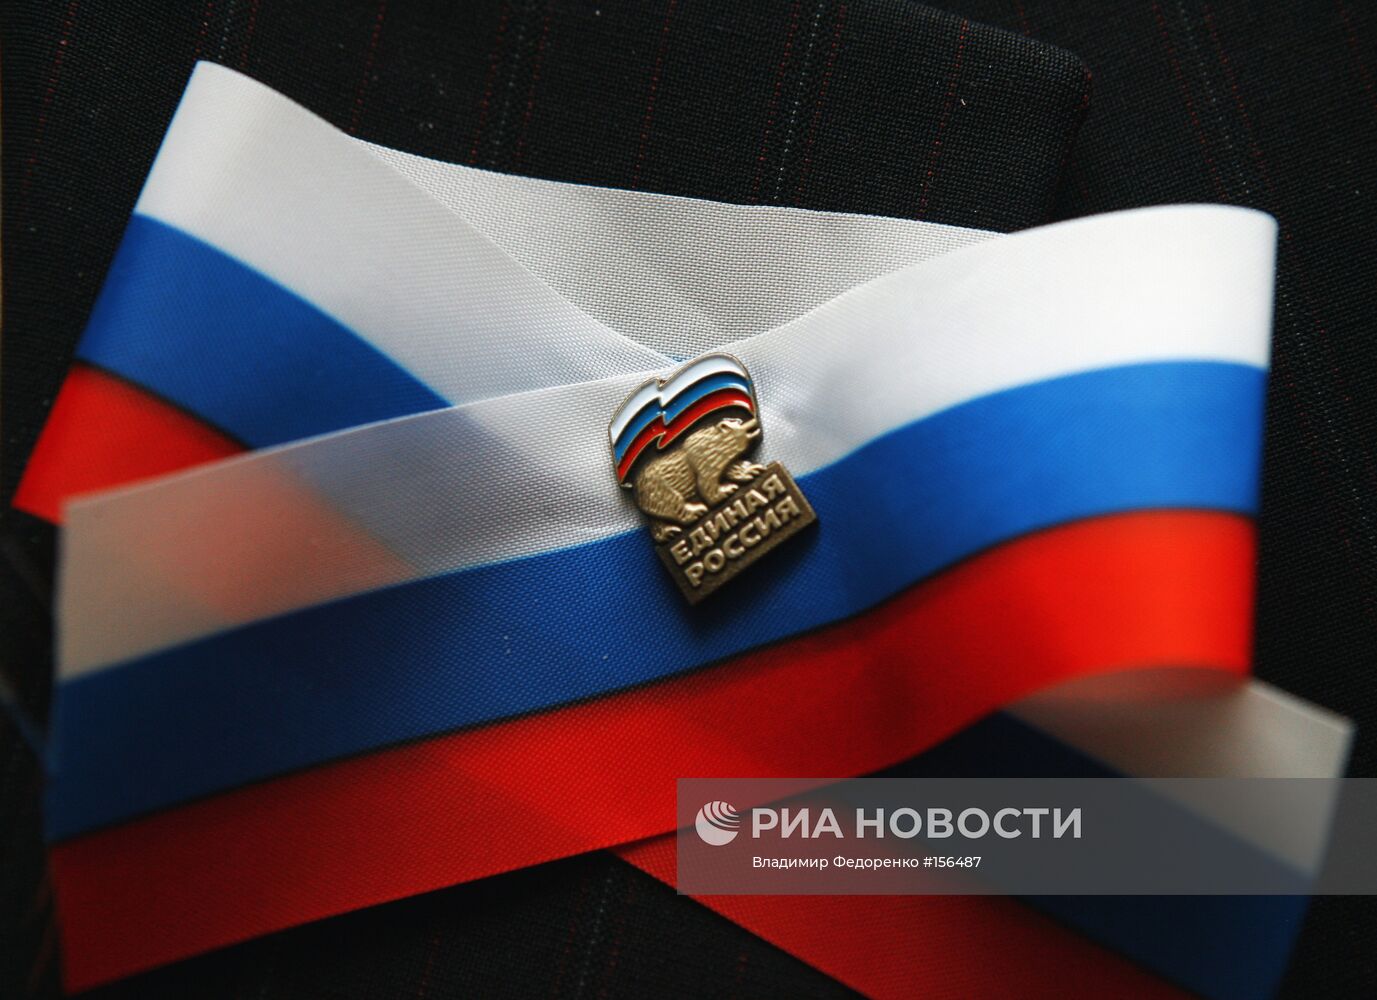 Ленточка и партийный значок "Единой России"